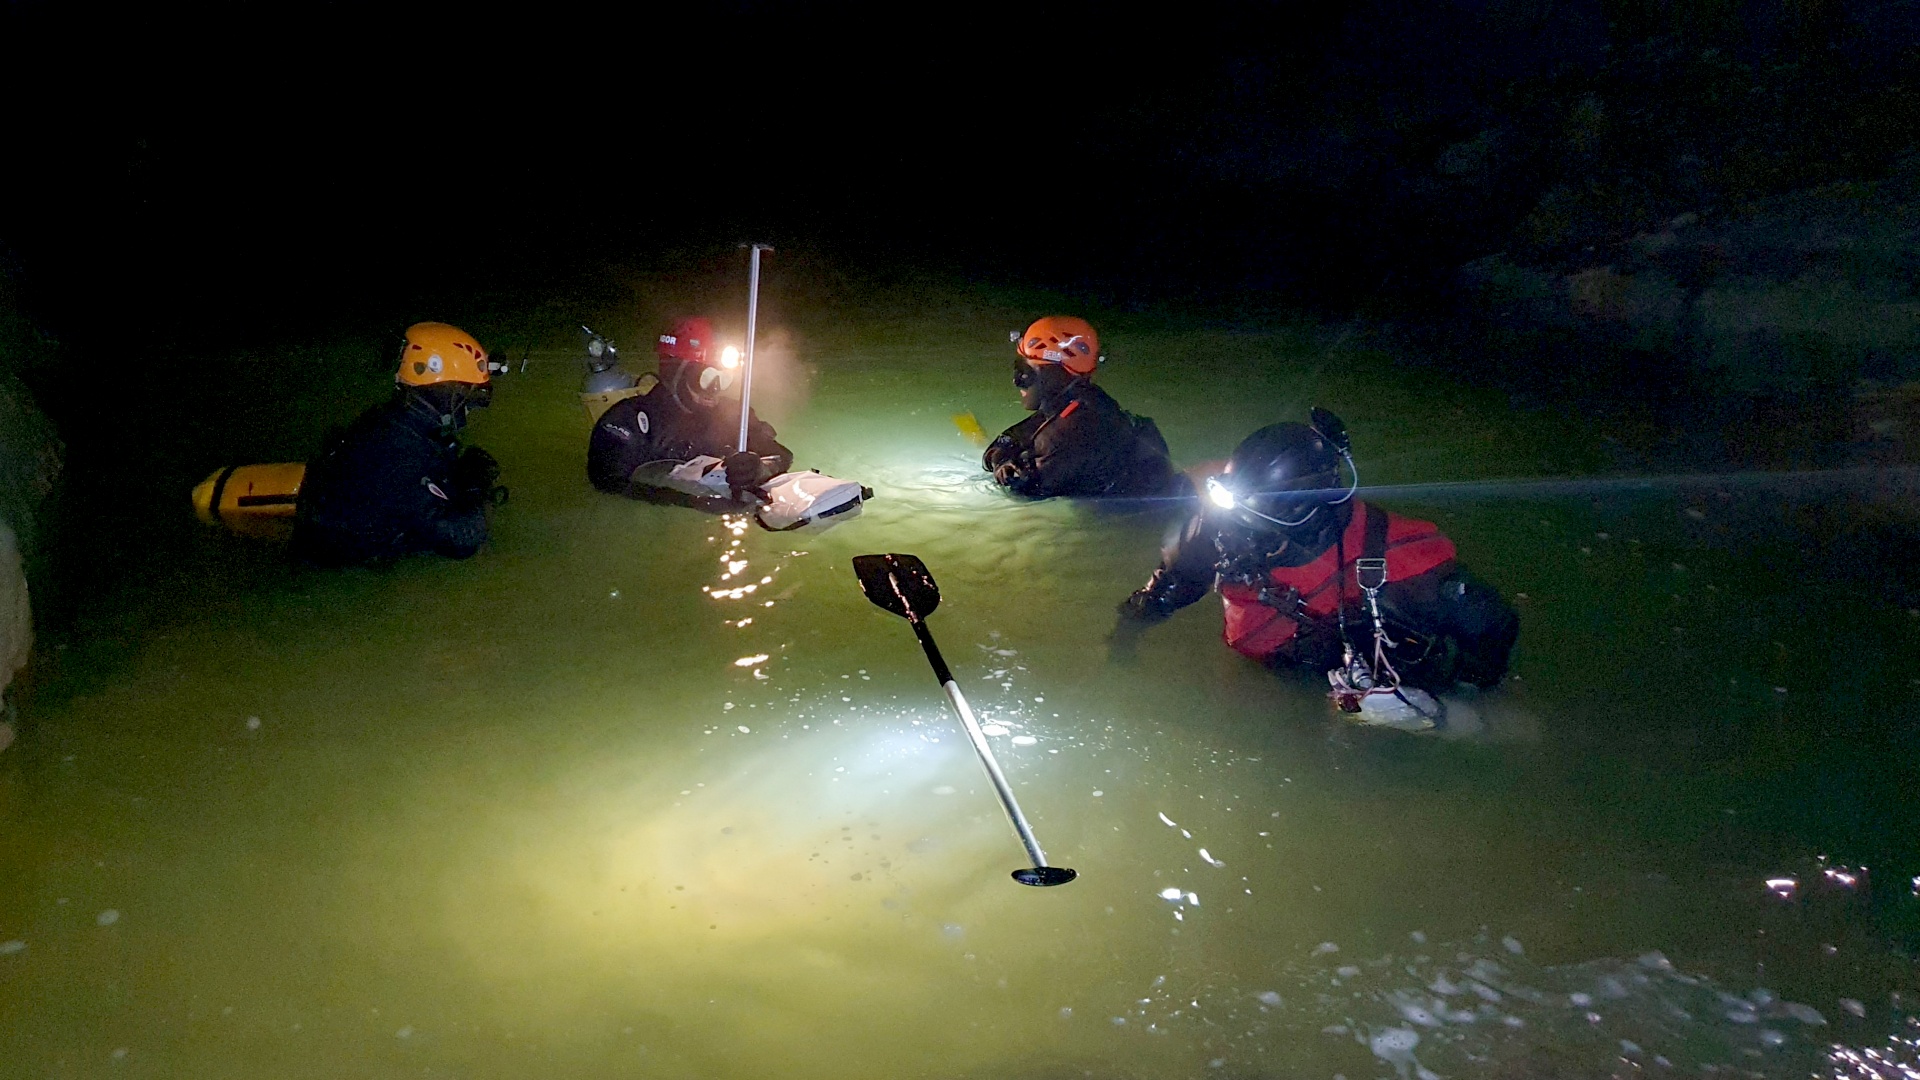 Словенским спасателям удалось вызволить группу туристов из затопленной пещеры